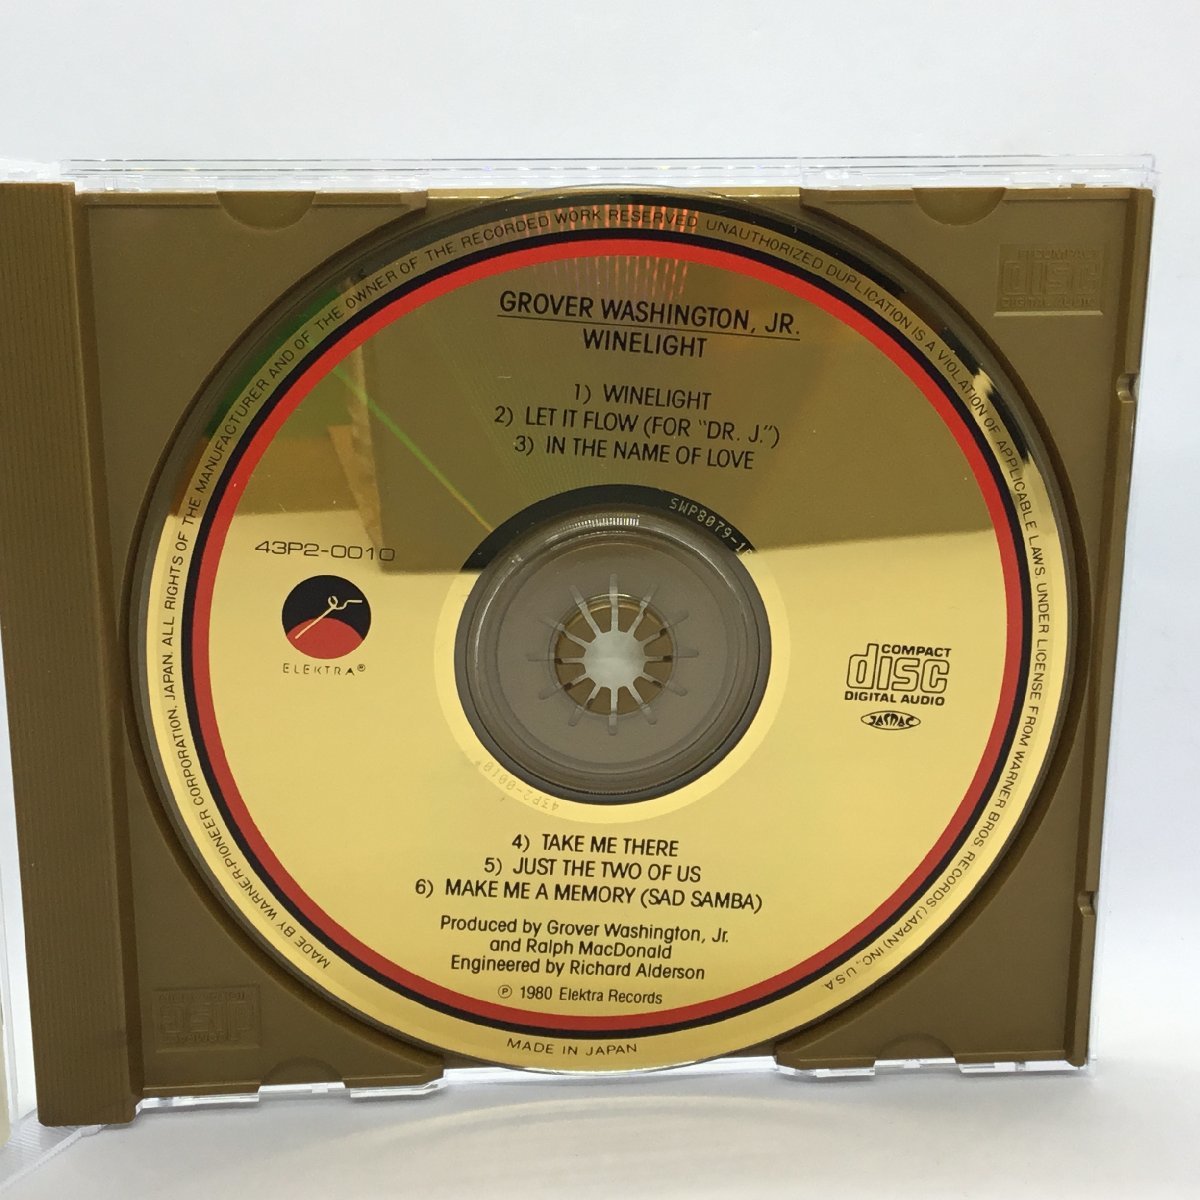 ゴールドCD ◇ グローヴァー・ワシントンJr. / ワインライト (GOLD CD) 43P2-0010 GROVER WASHINGTON JR. / WINELIGHTの画像3